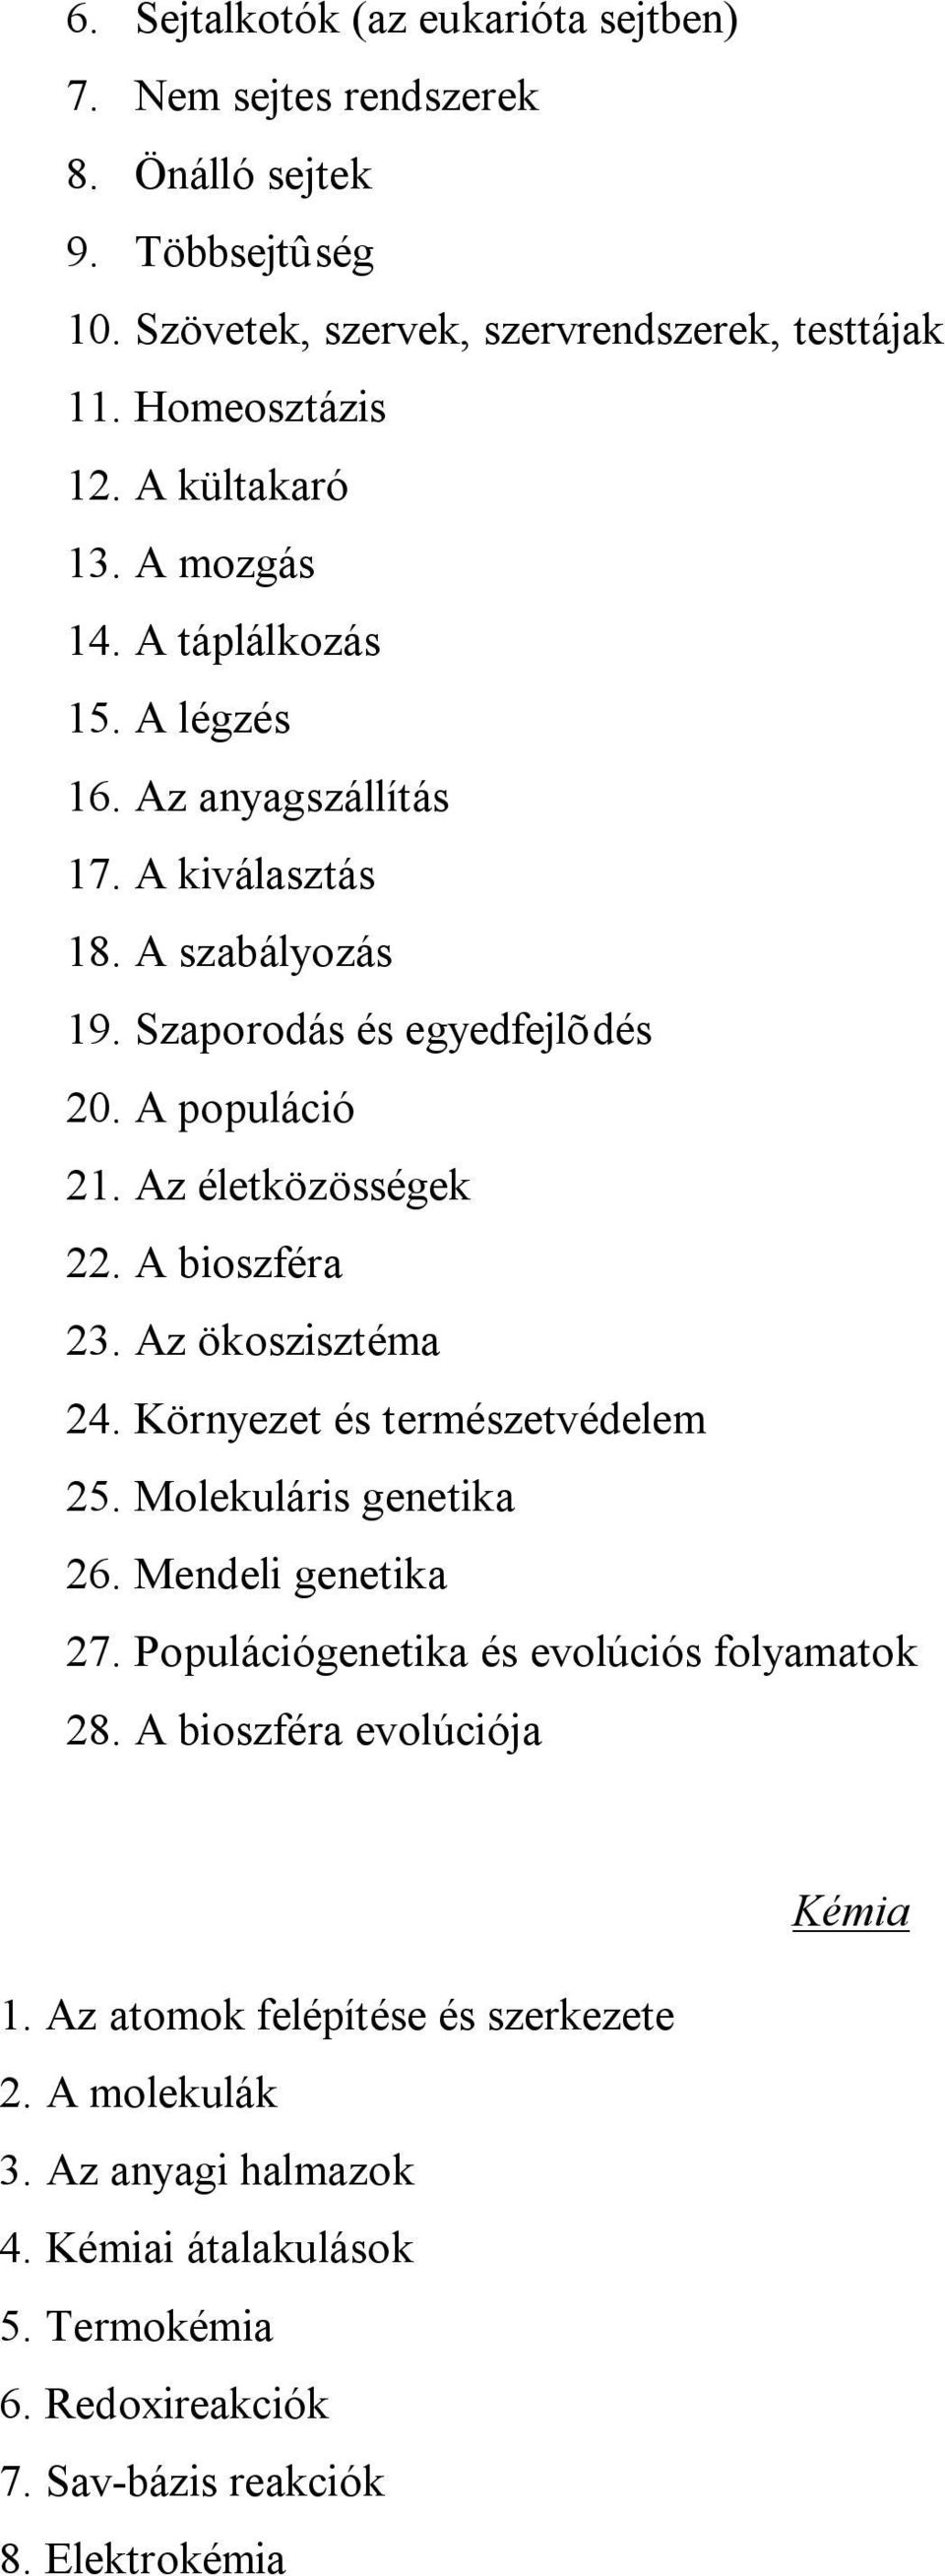 Az életközösségek 22. A bioszféra 23. Az ökoszisztéma 24. Környezet és természetvédelem 25. Molekuláris genetika 26. Mendeli genetika 27.